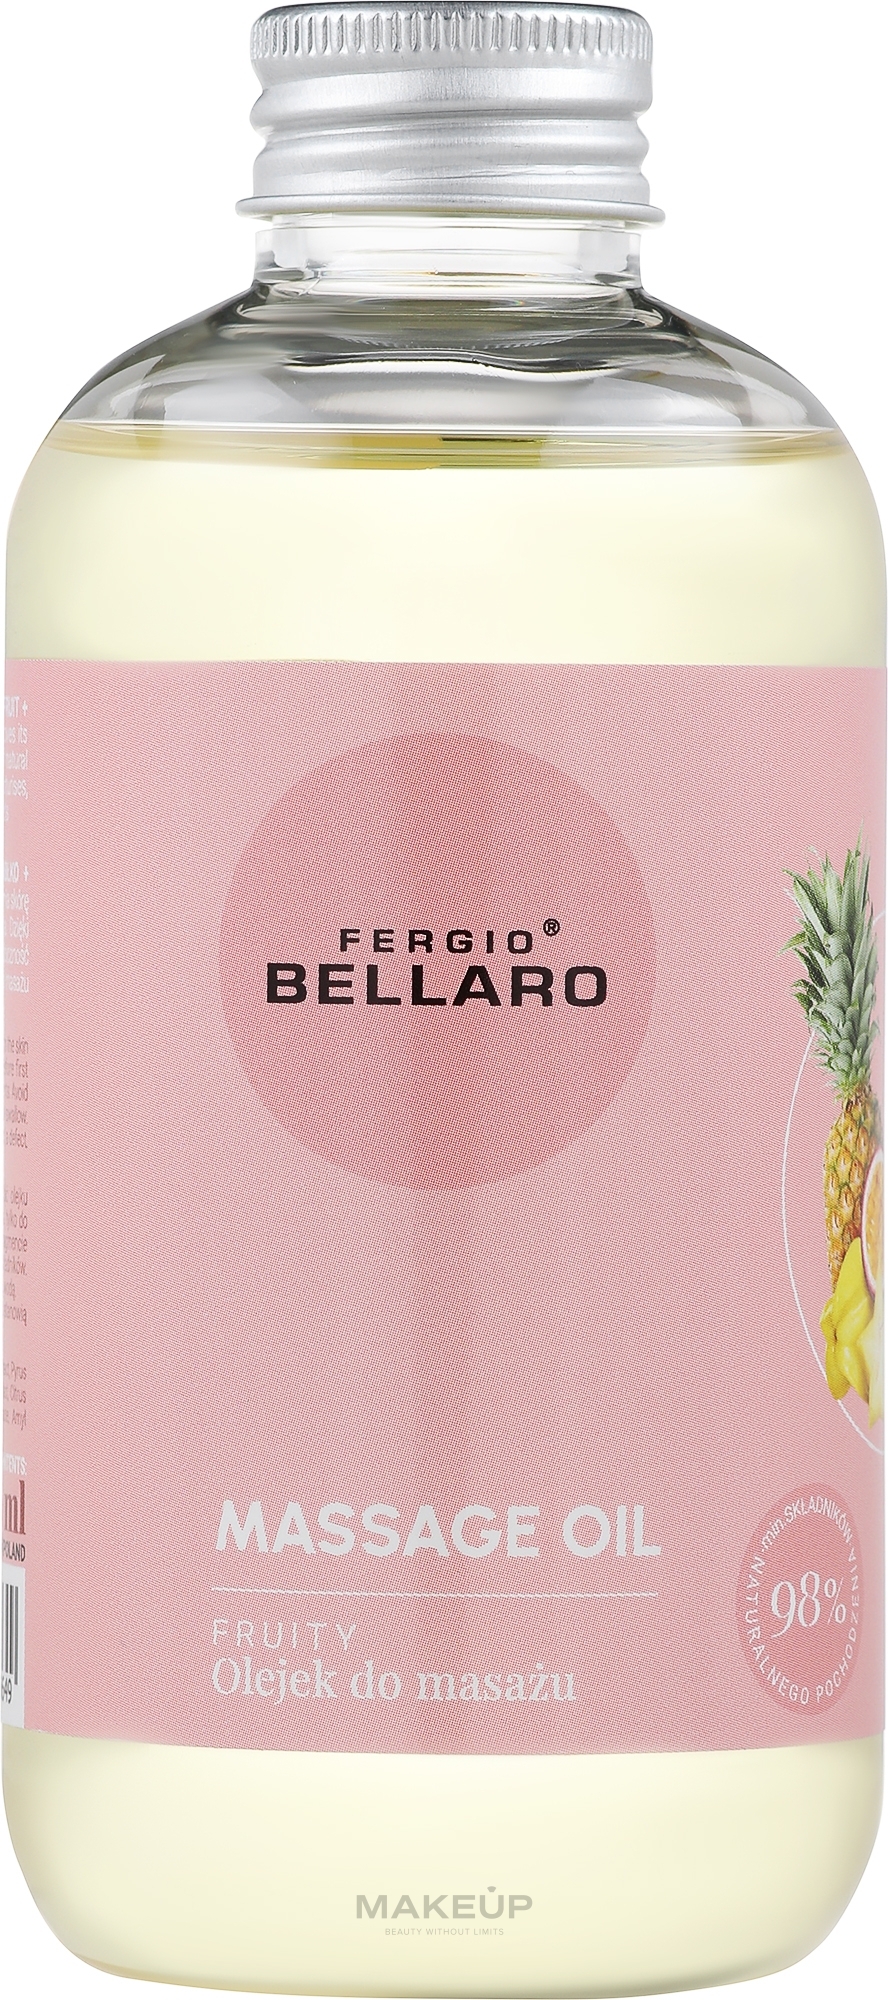 Массажное масло "Фруктовое" - Fergio Bellaro Massage Oil — фото 200ml